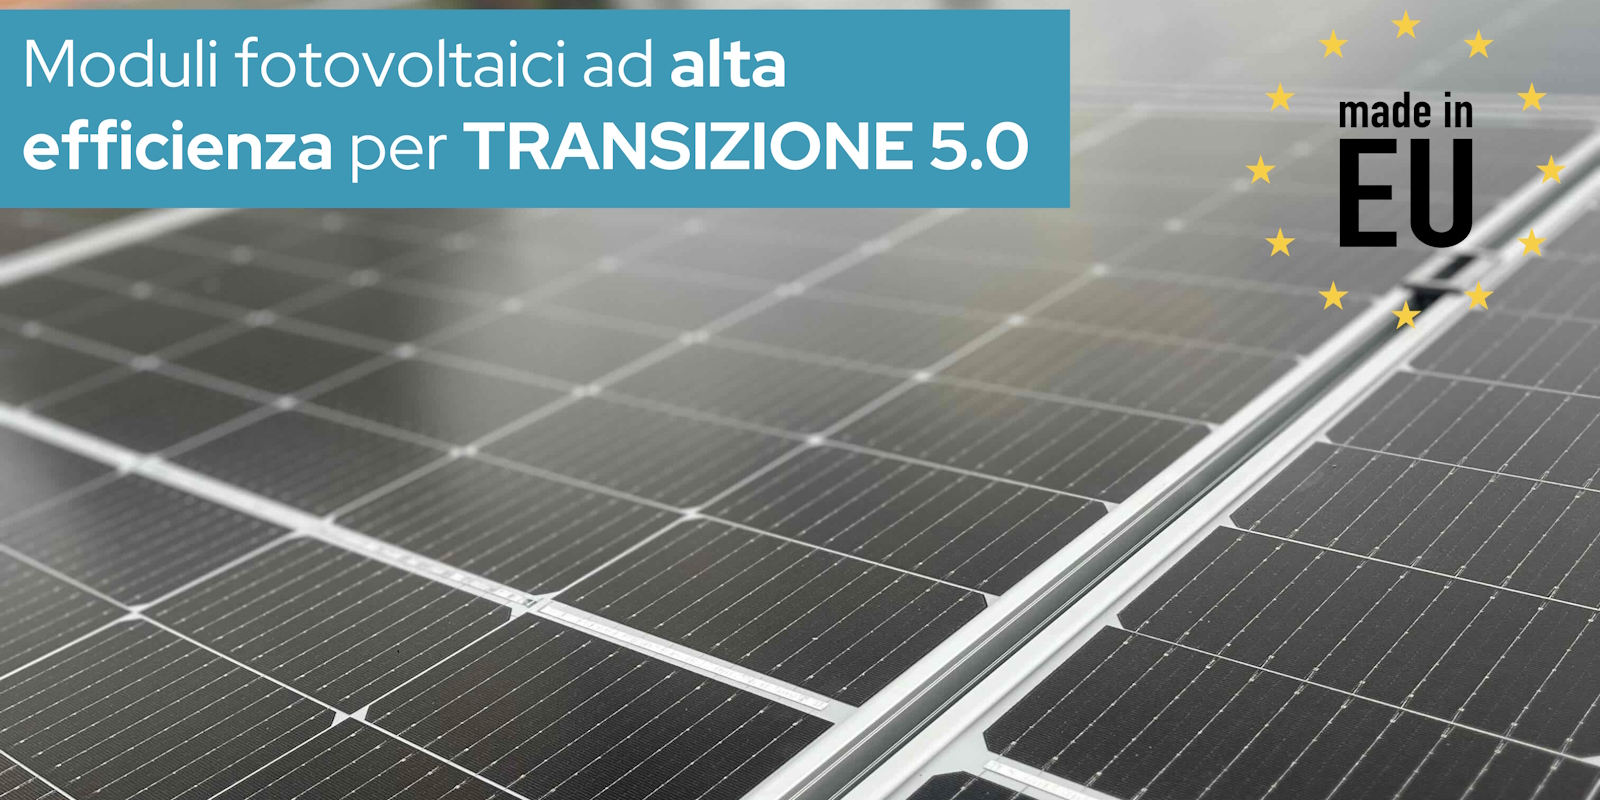 moduli fotovoltaici ad alta efficienza per transizione 5.0